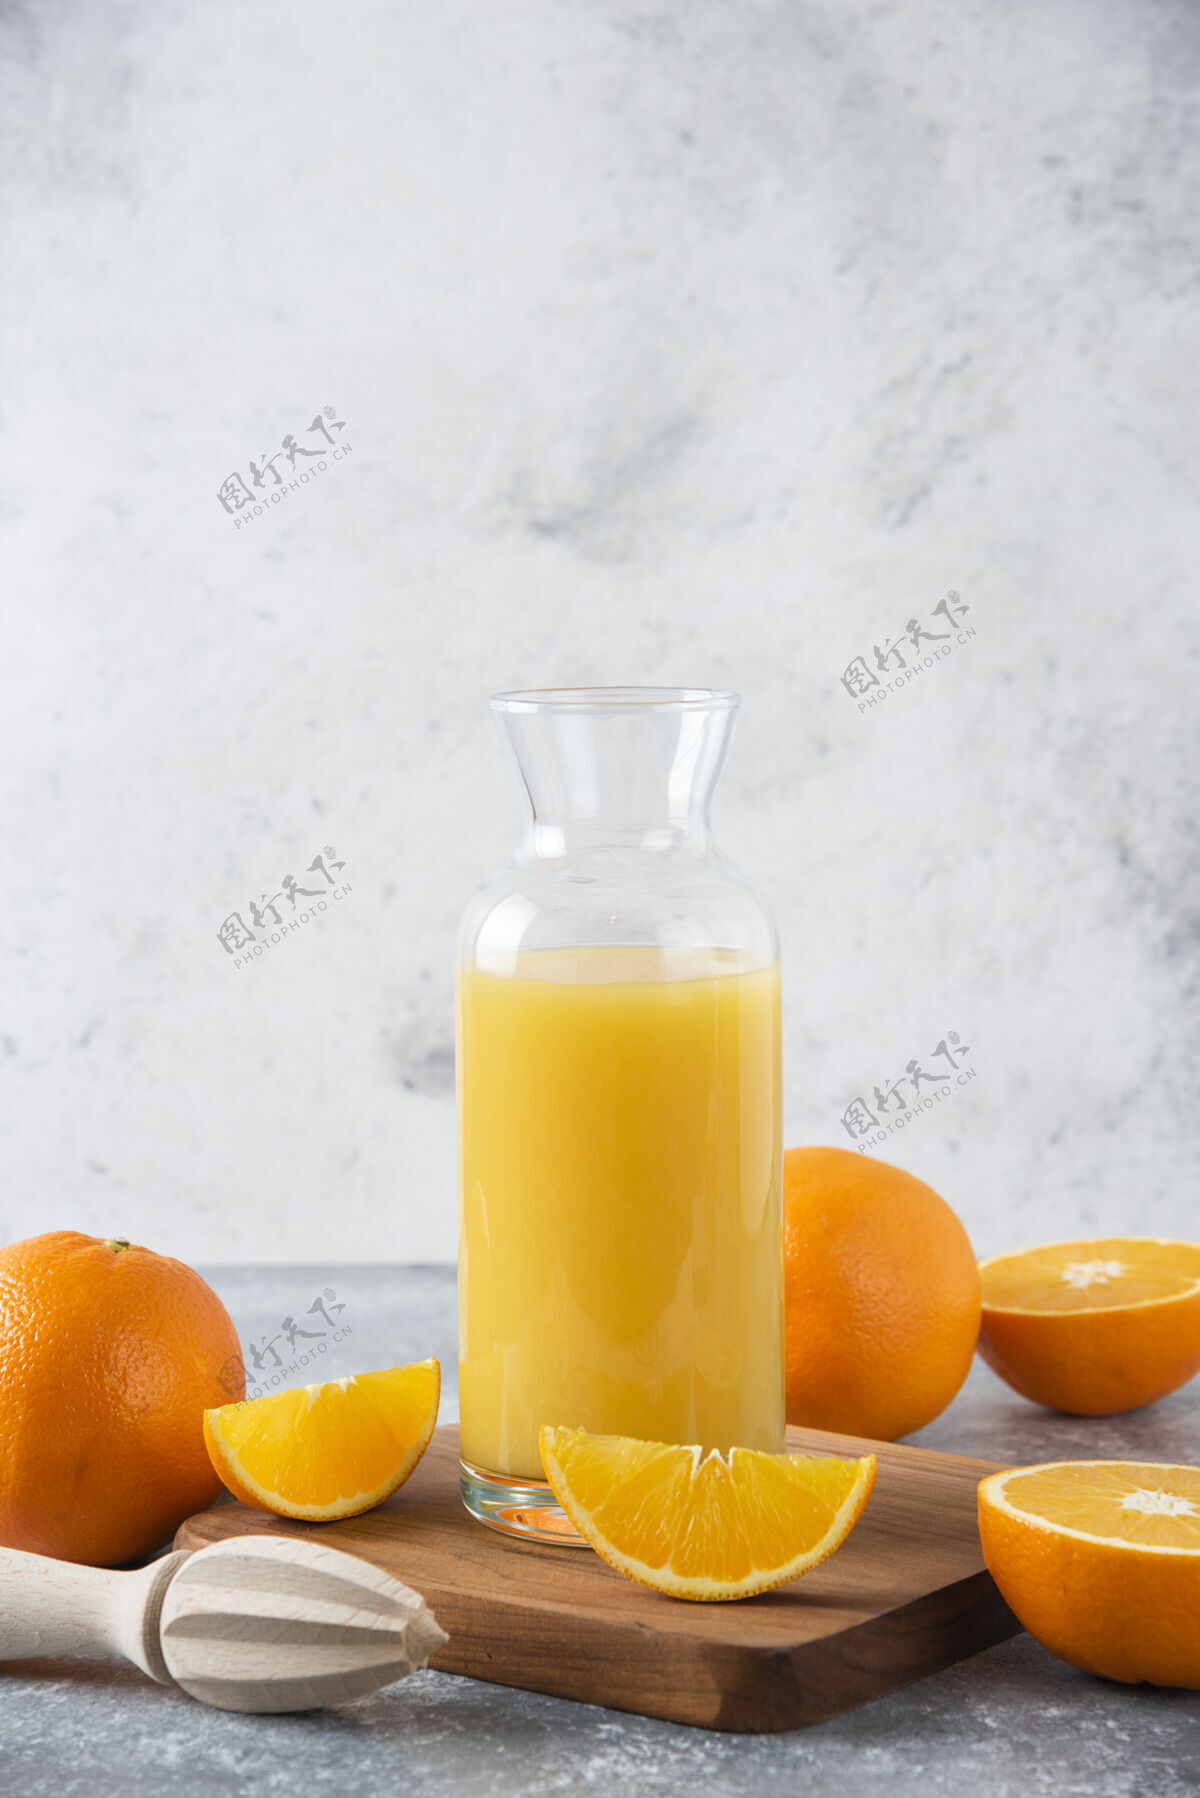 甜点一个装着新鲜橙子的果汁的玻璃罐放在木板上美味味道橙子